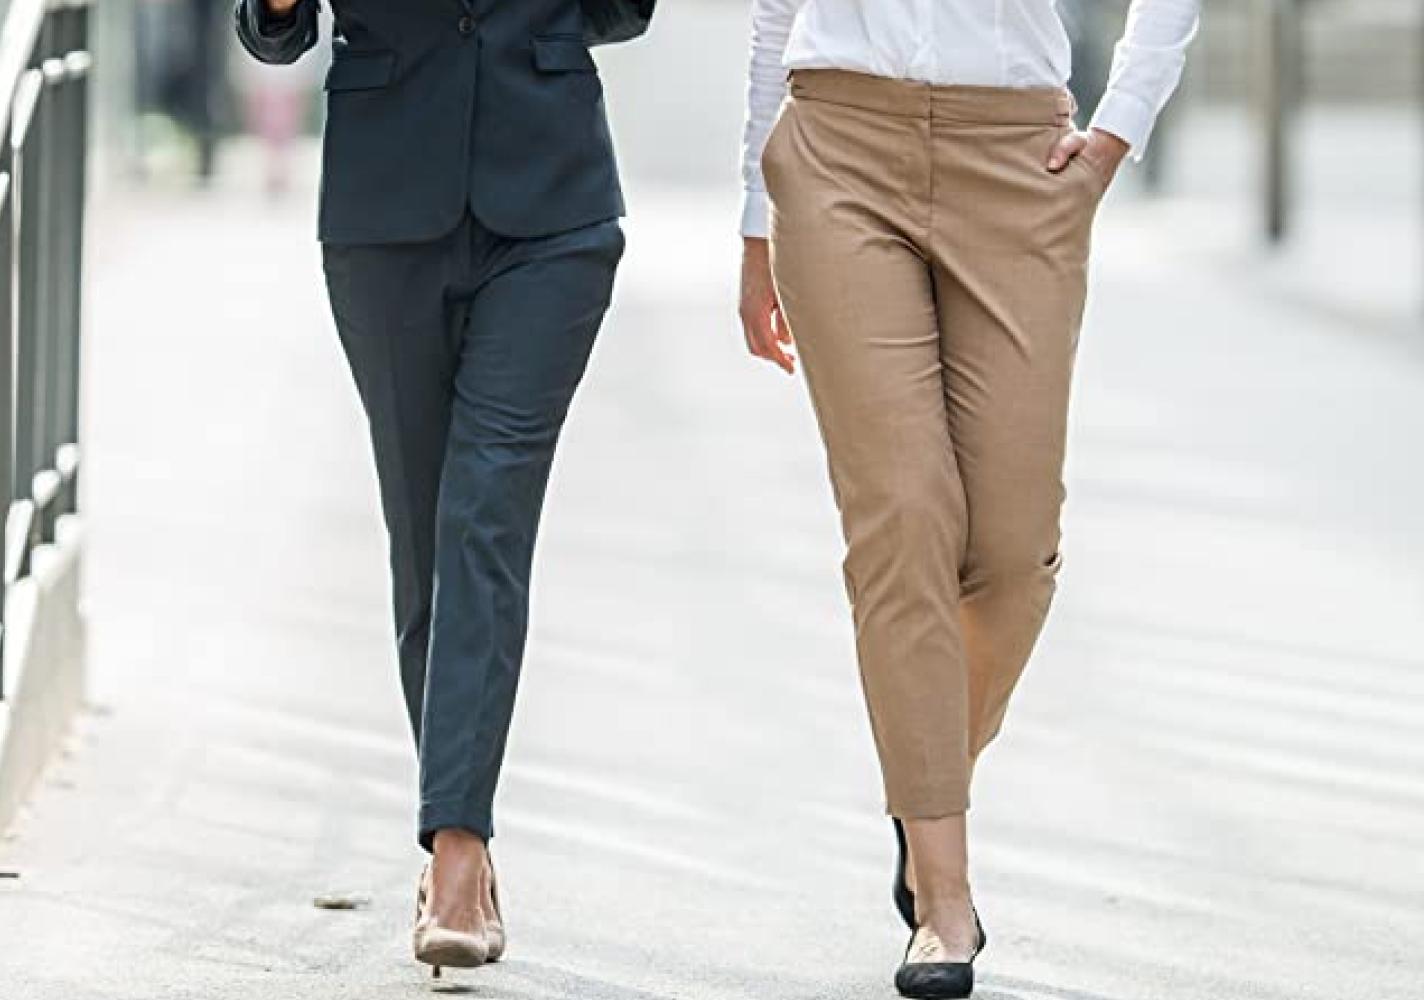 Women in business attire walking